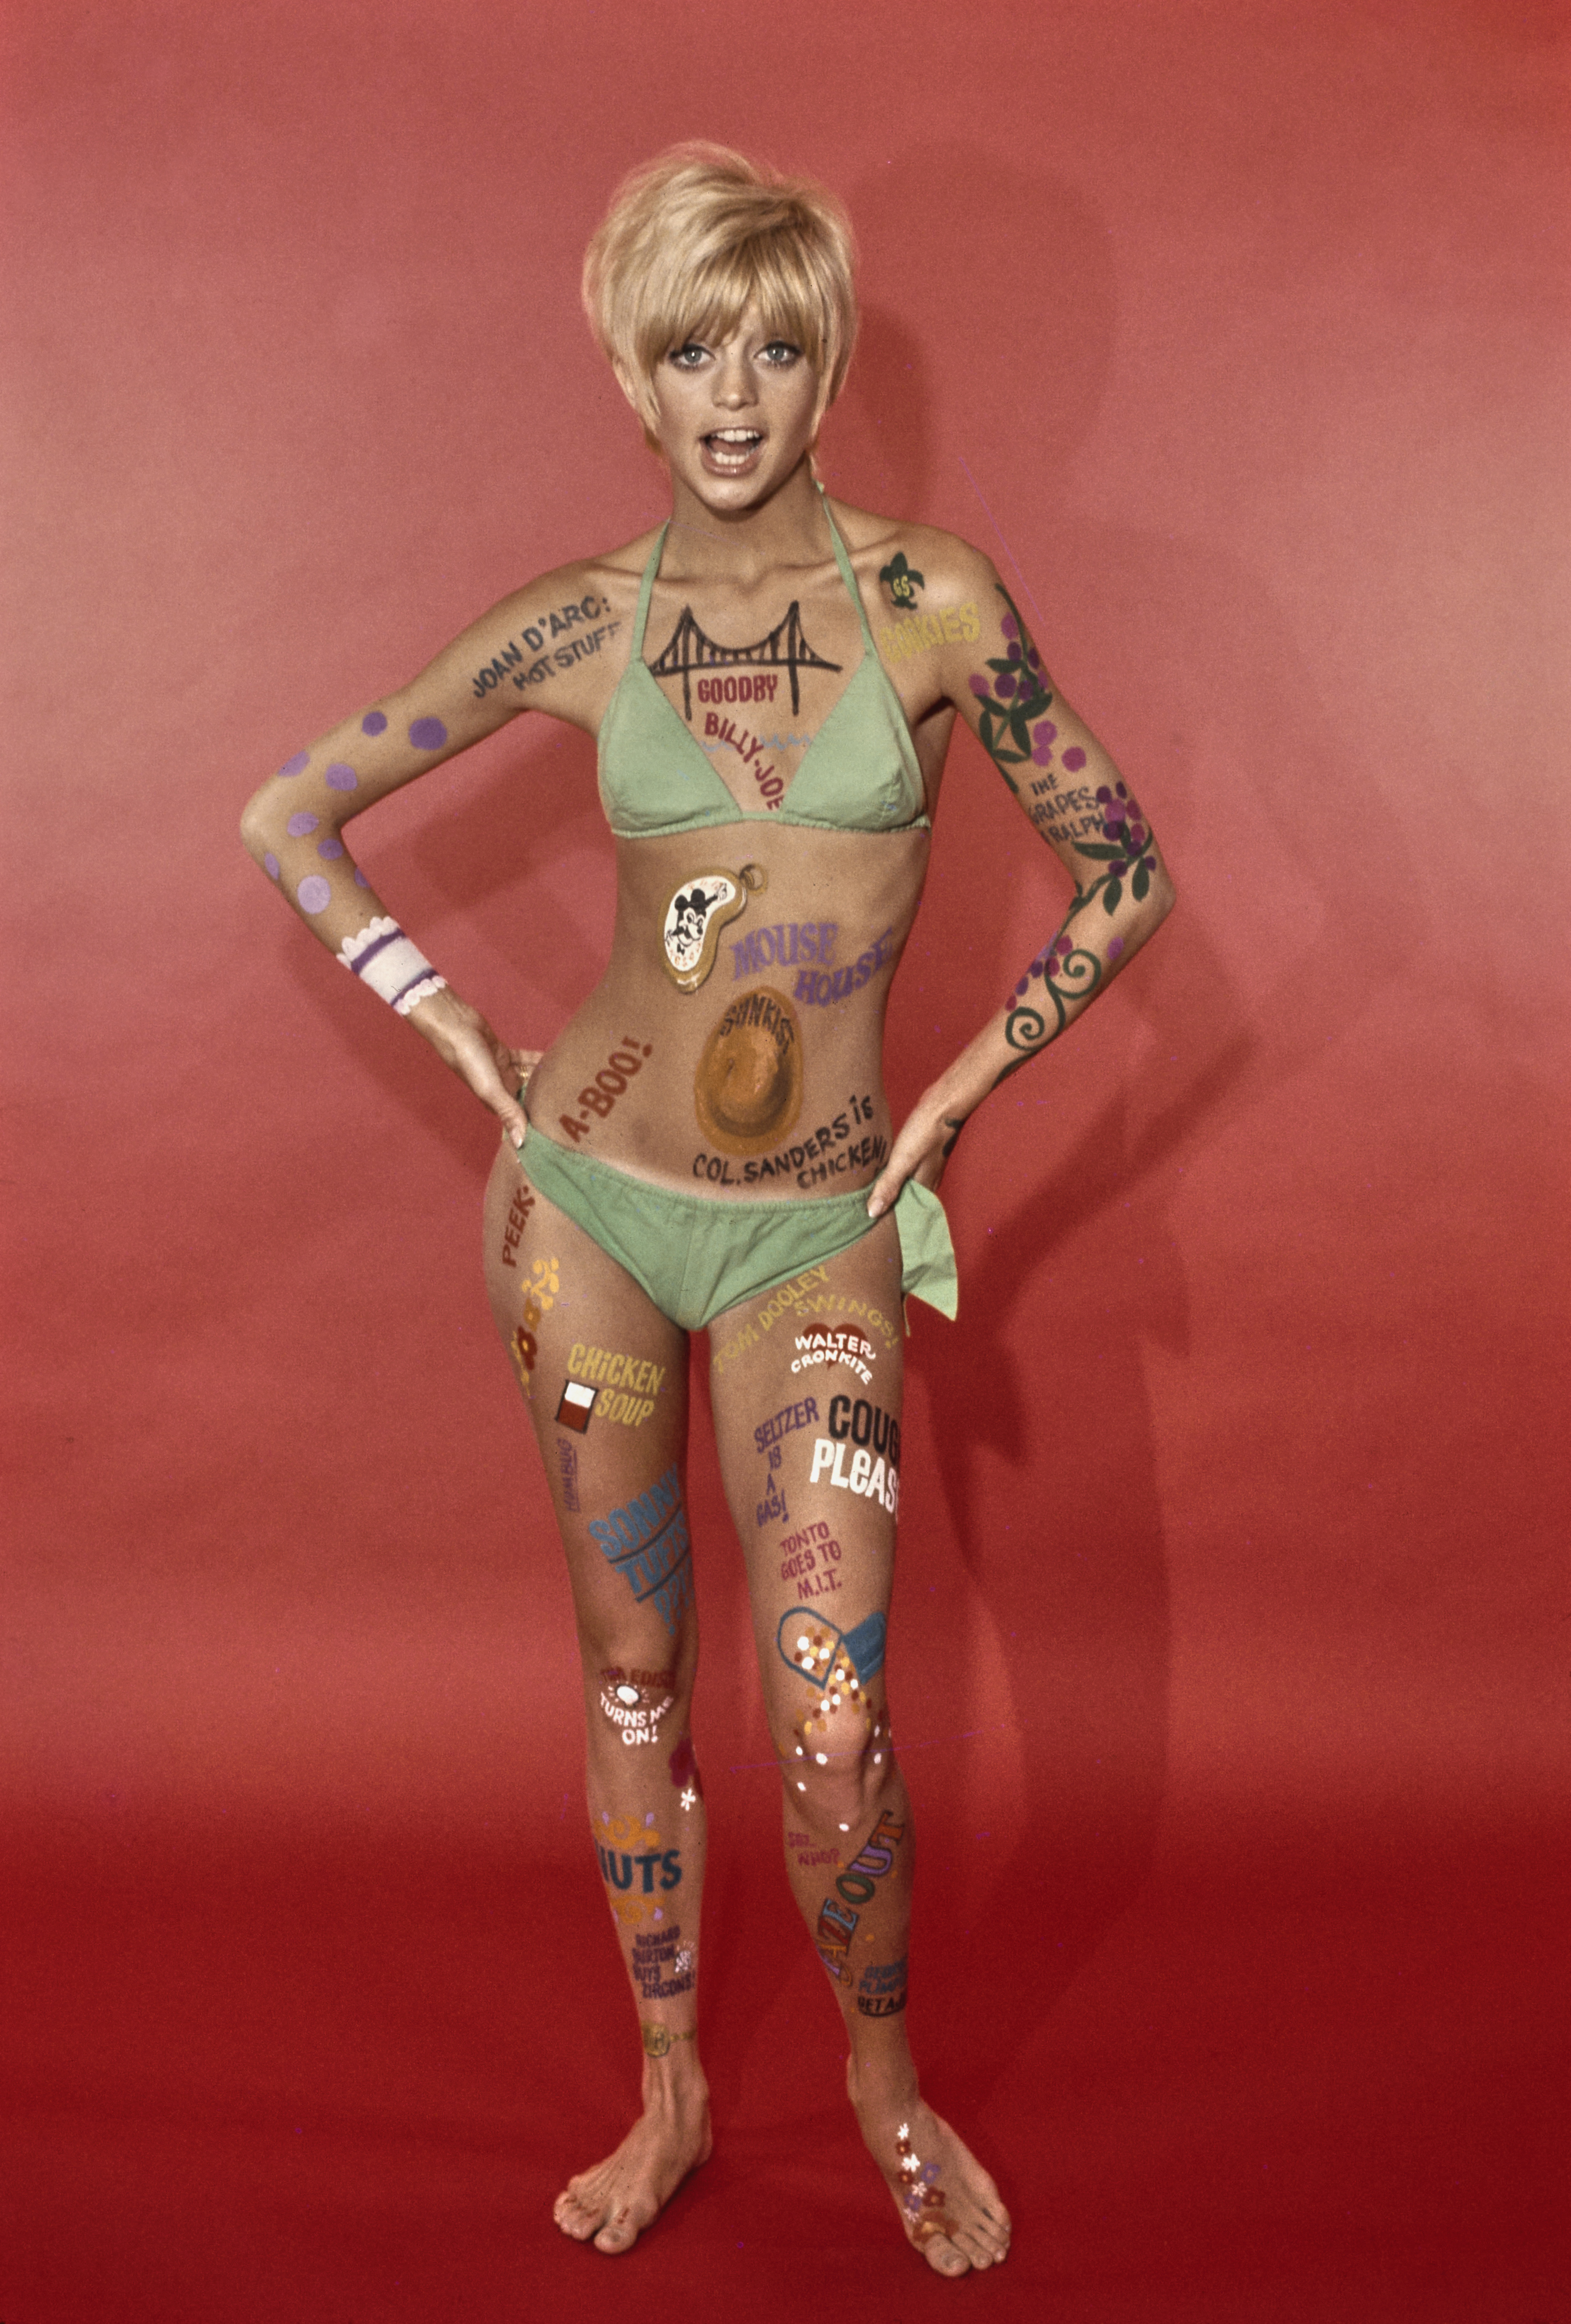 Goldie Hawn lleva pintura corporal y un bikini en un retrato promocional de la serie de televisión "Laugh-In", el 30 de junio de 1968. | Foto: Getty Images